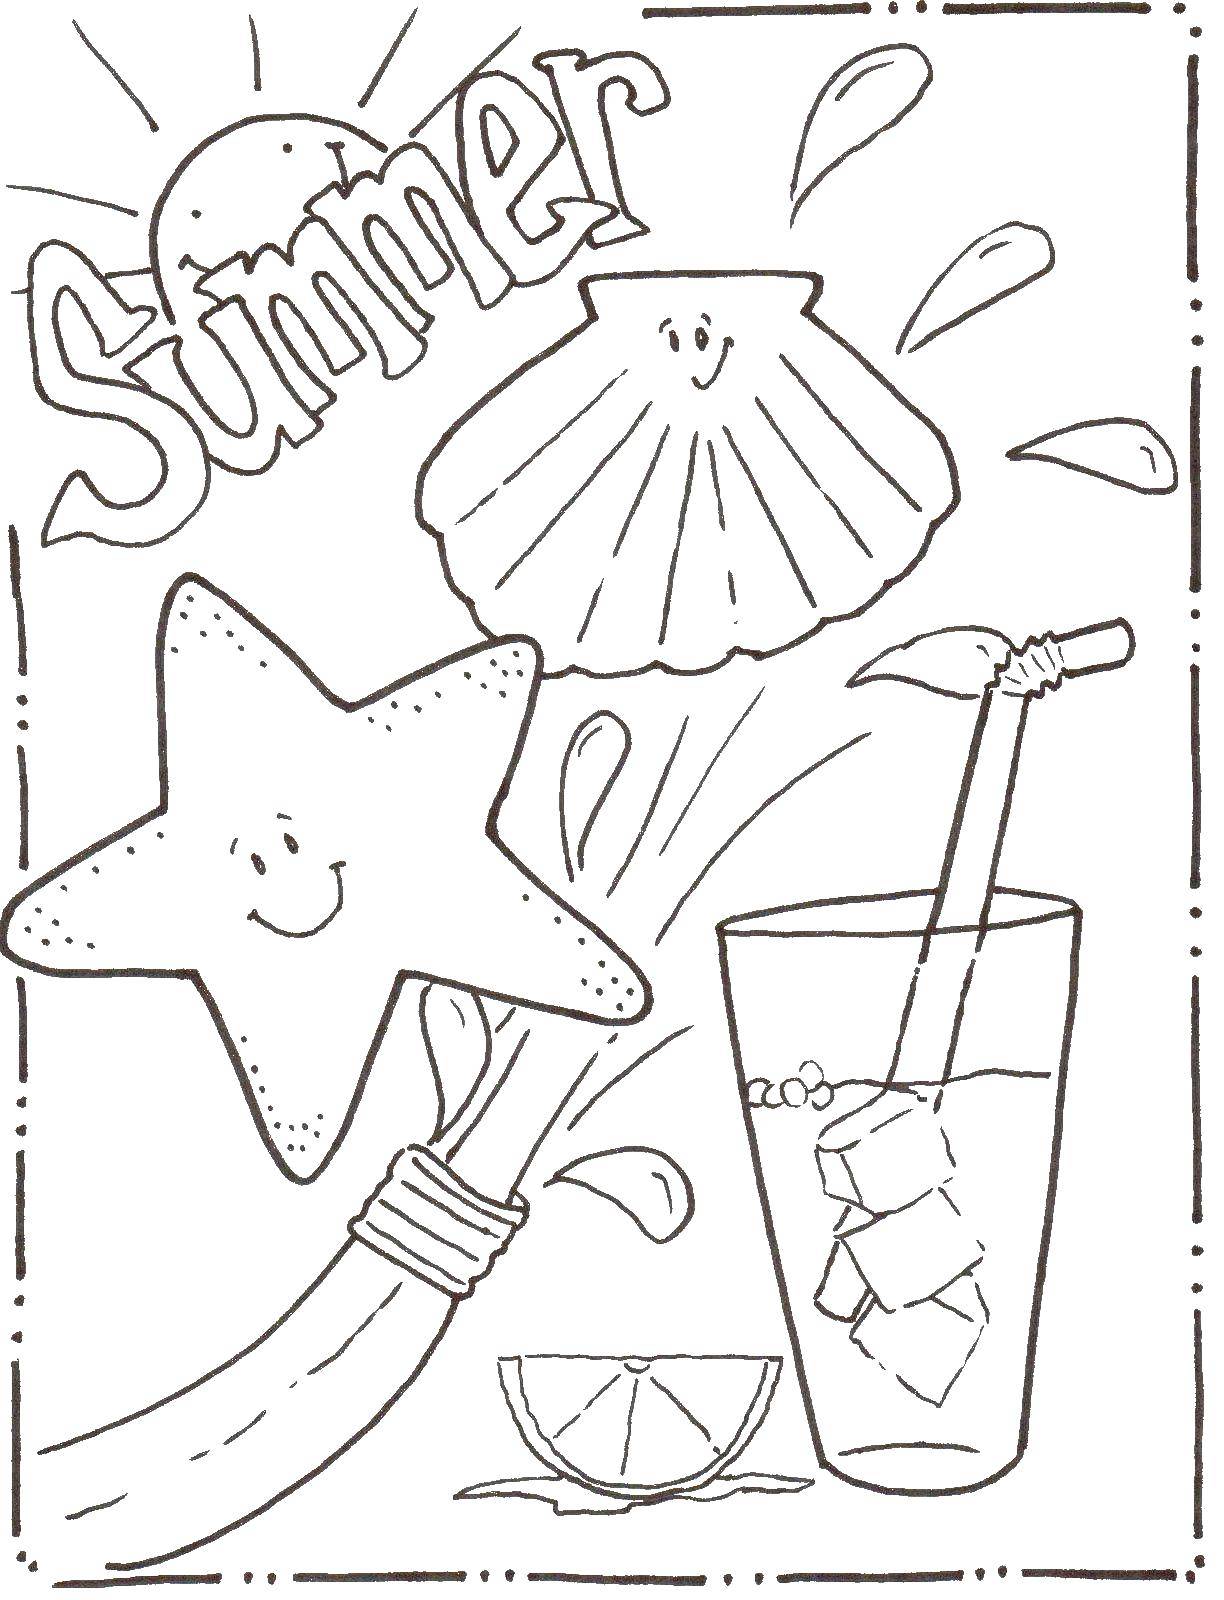 Название: Раскраска Морская звезда и ракушка веселятся на пляже летом. Категория: лето. Теги: Лето, пляж, отдых, веселье, подводный мир.